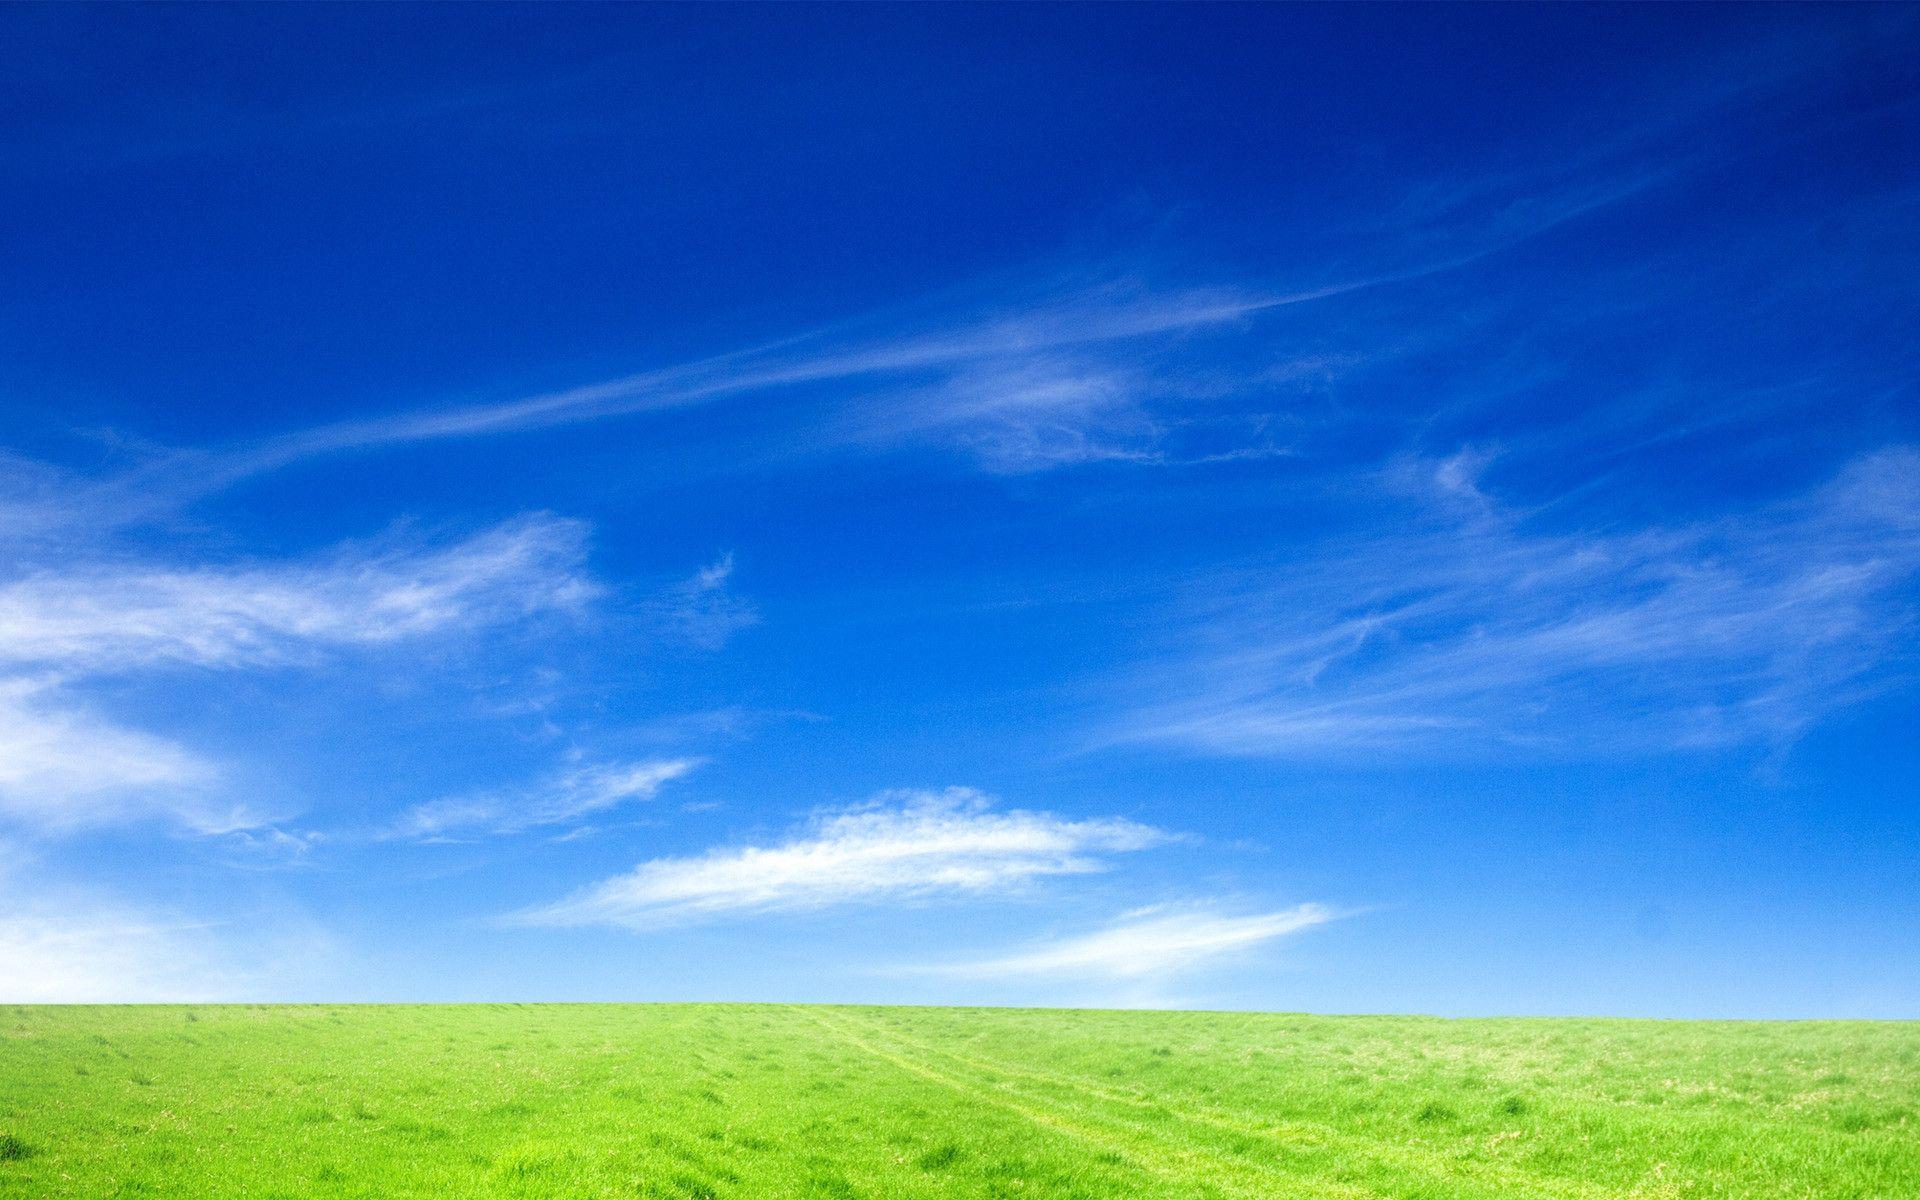 Hình nền bầu trời xanh: Hướng tâm trí và tinh thần vào những khoảnh khắc tuyệt đẹp trong thiên nhiên với hình nền bầu trời xanh. Cảm nhận sự thanh bình và tĩnh lặng từ bầu trời xanh ngát, những bông mây bồng bềnh và những tia nắng lung linh trên màn hình điện thoại hay máy tính của bạn.